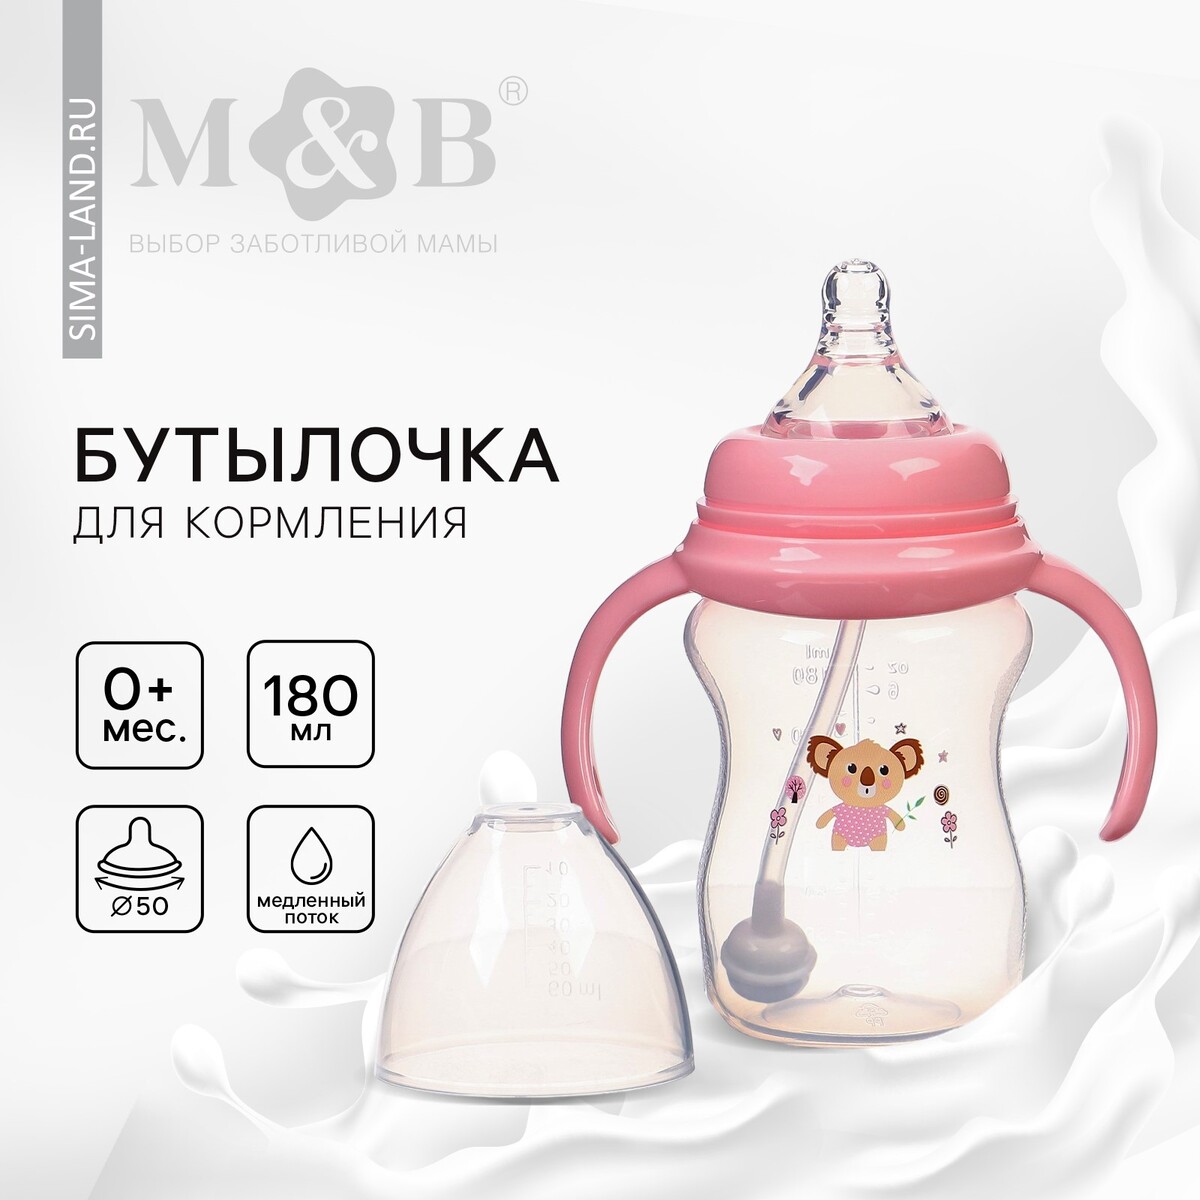 Бутылочка для кормления, шг ø50мм,180 мл, +0мес., цвет розовый Mum&Baby